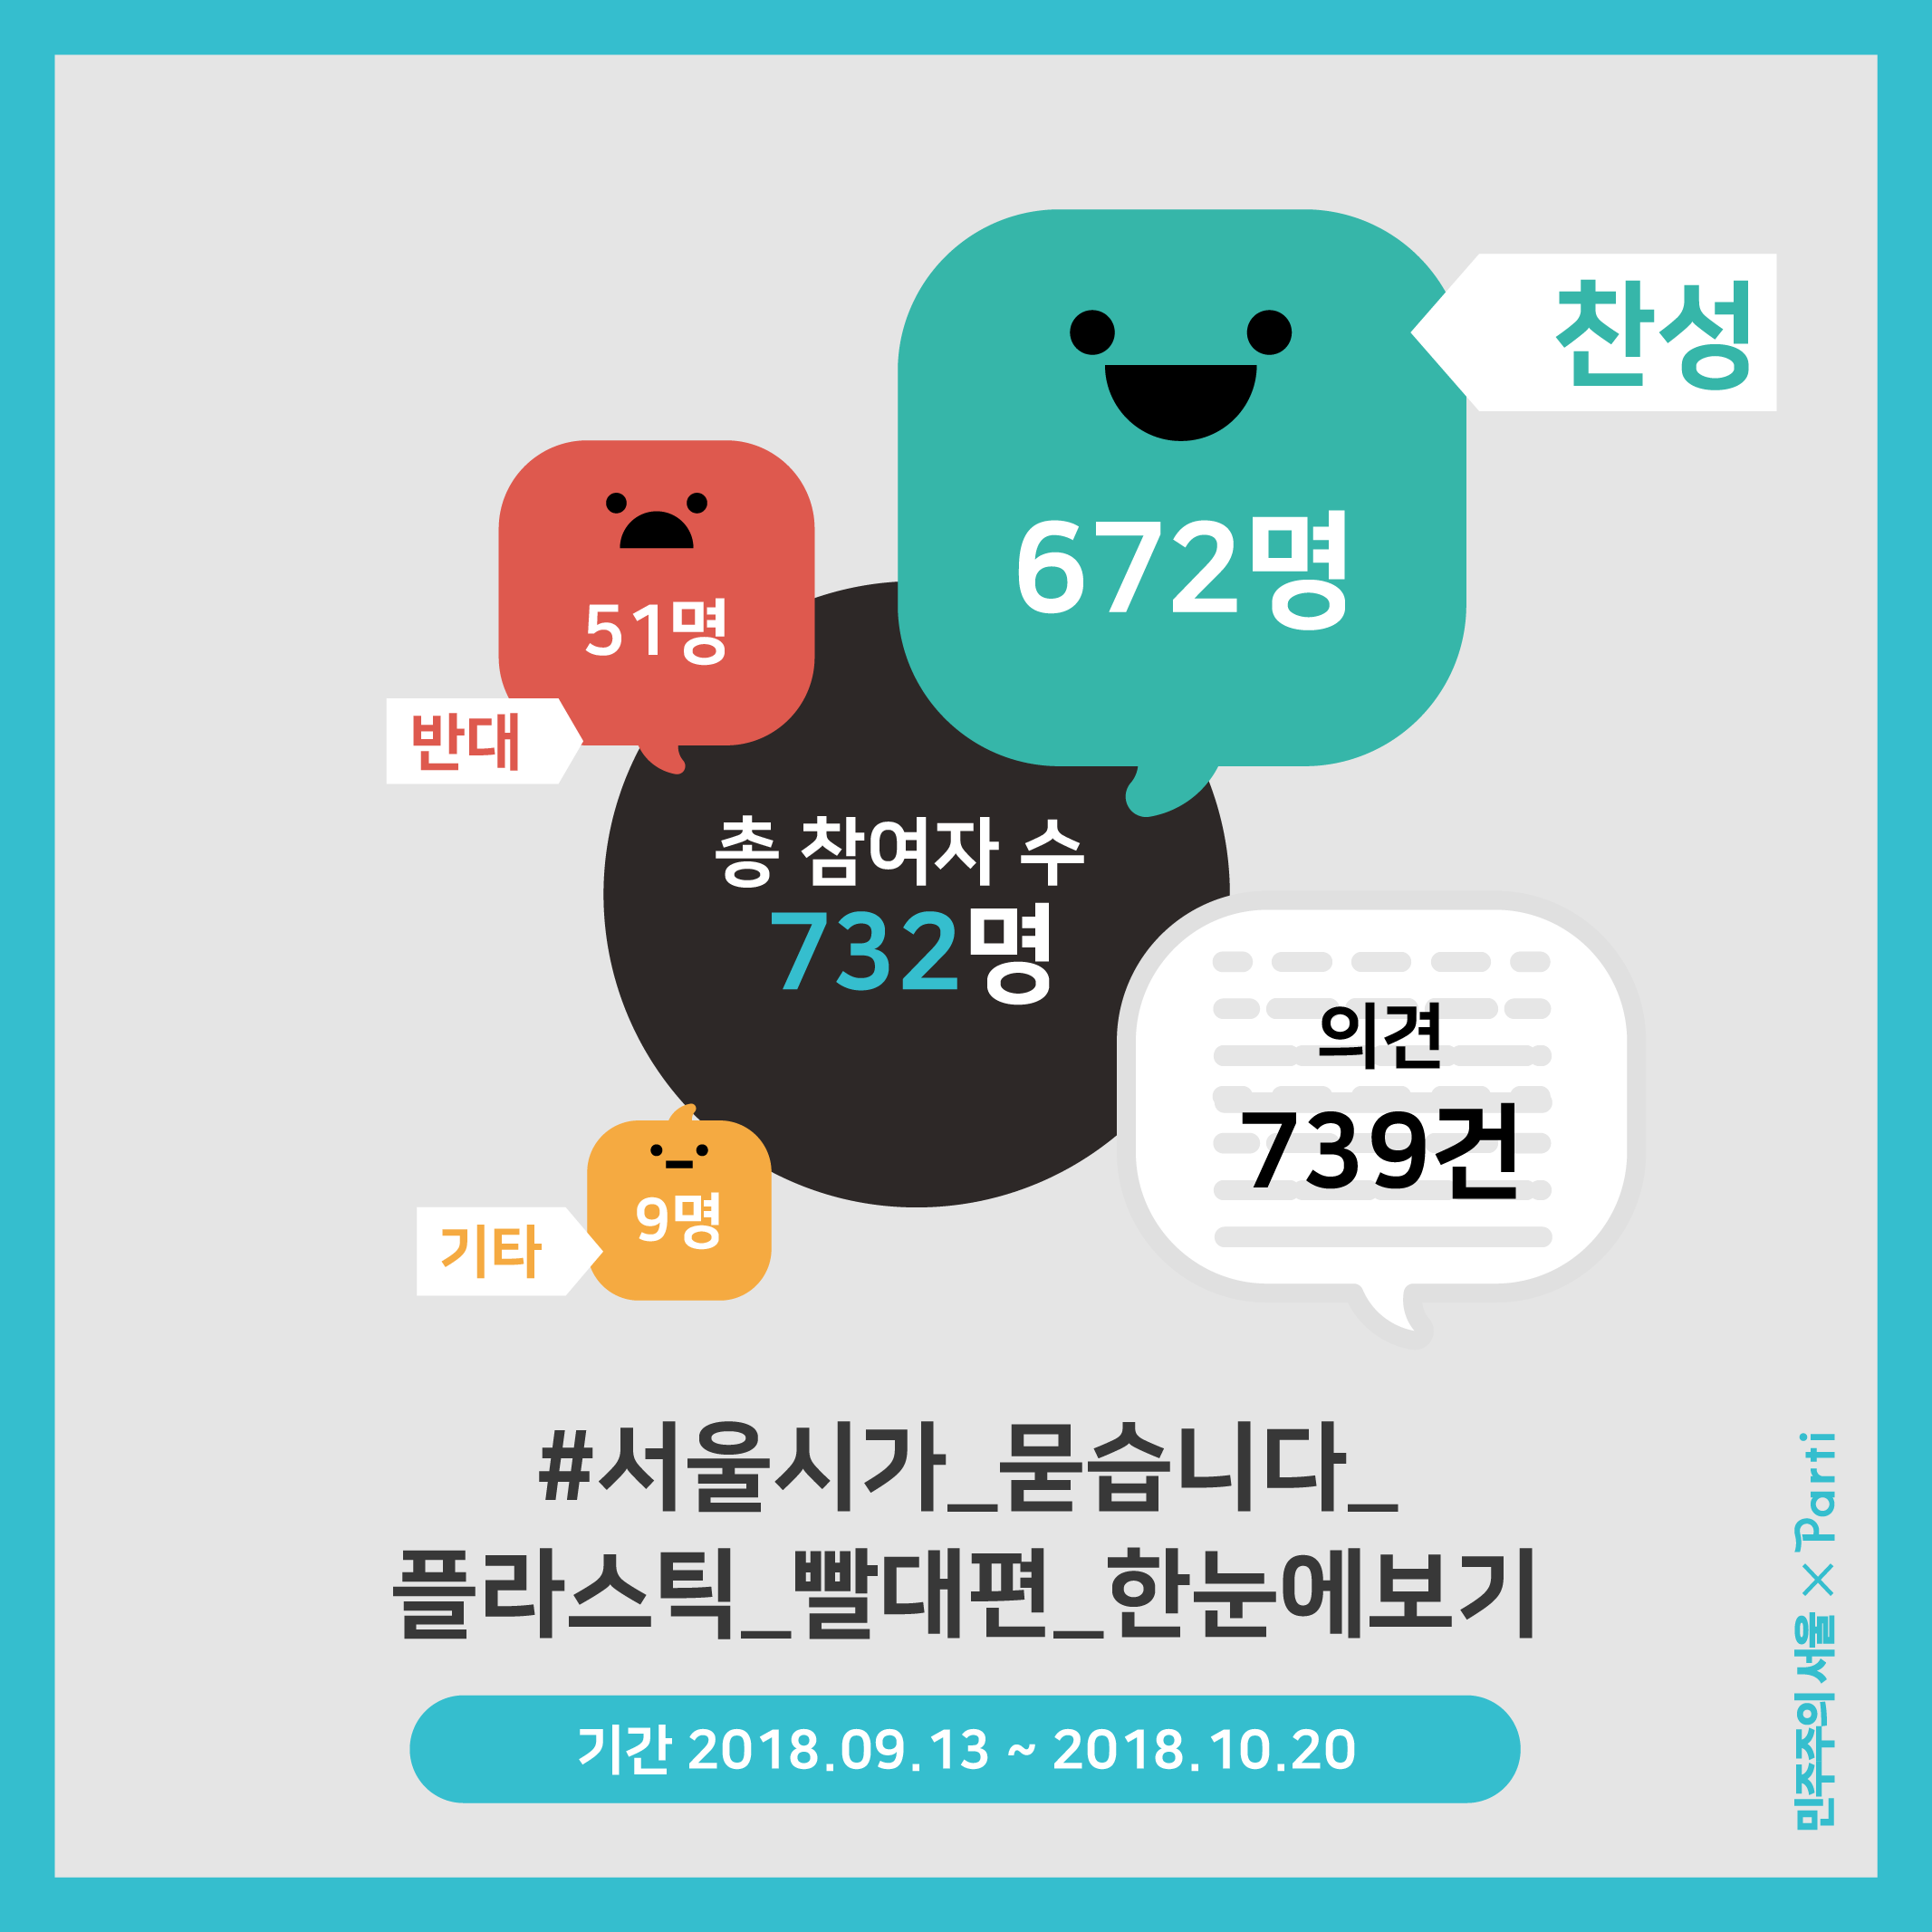 2018년 9월 13일부터 2018년 10월 20일까지 진행된 서울시가 묻습니다 플라스틱 빨대편을 정리해보았습니다. 찬성 672명, 반대 51명, 기타 9명으로 총 732명이 참여하였으며, 739건의 의견이 모였습니다.